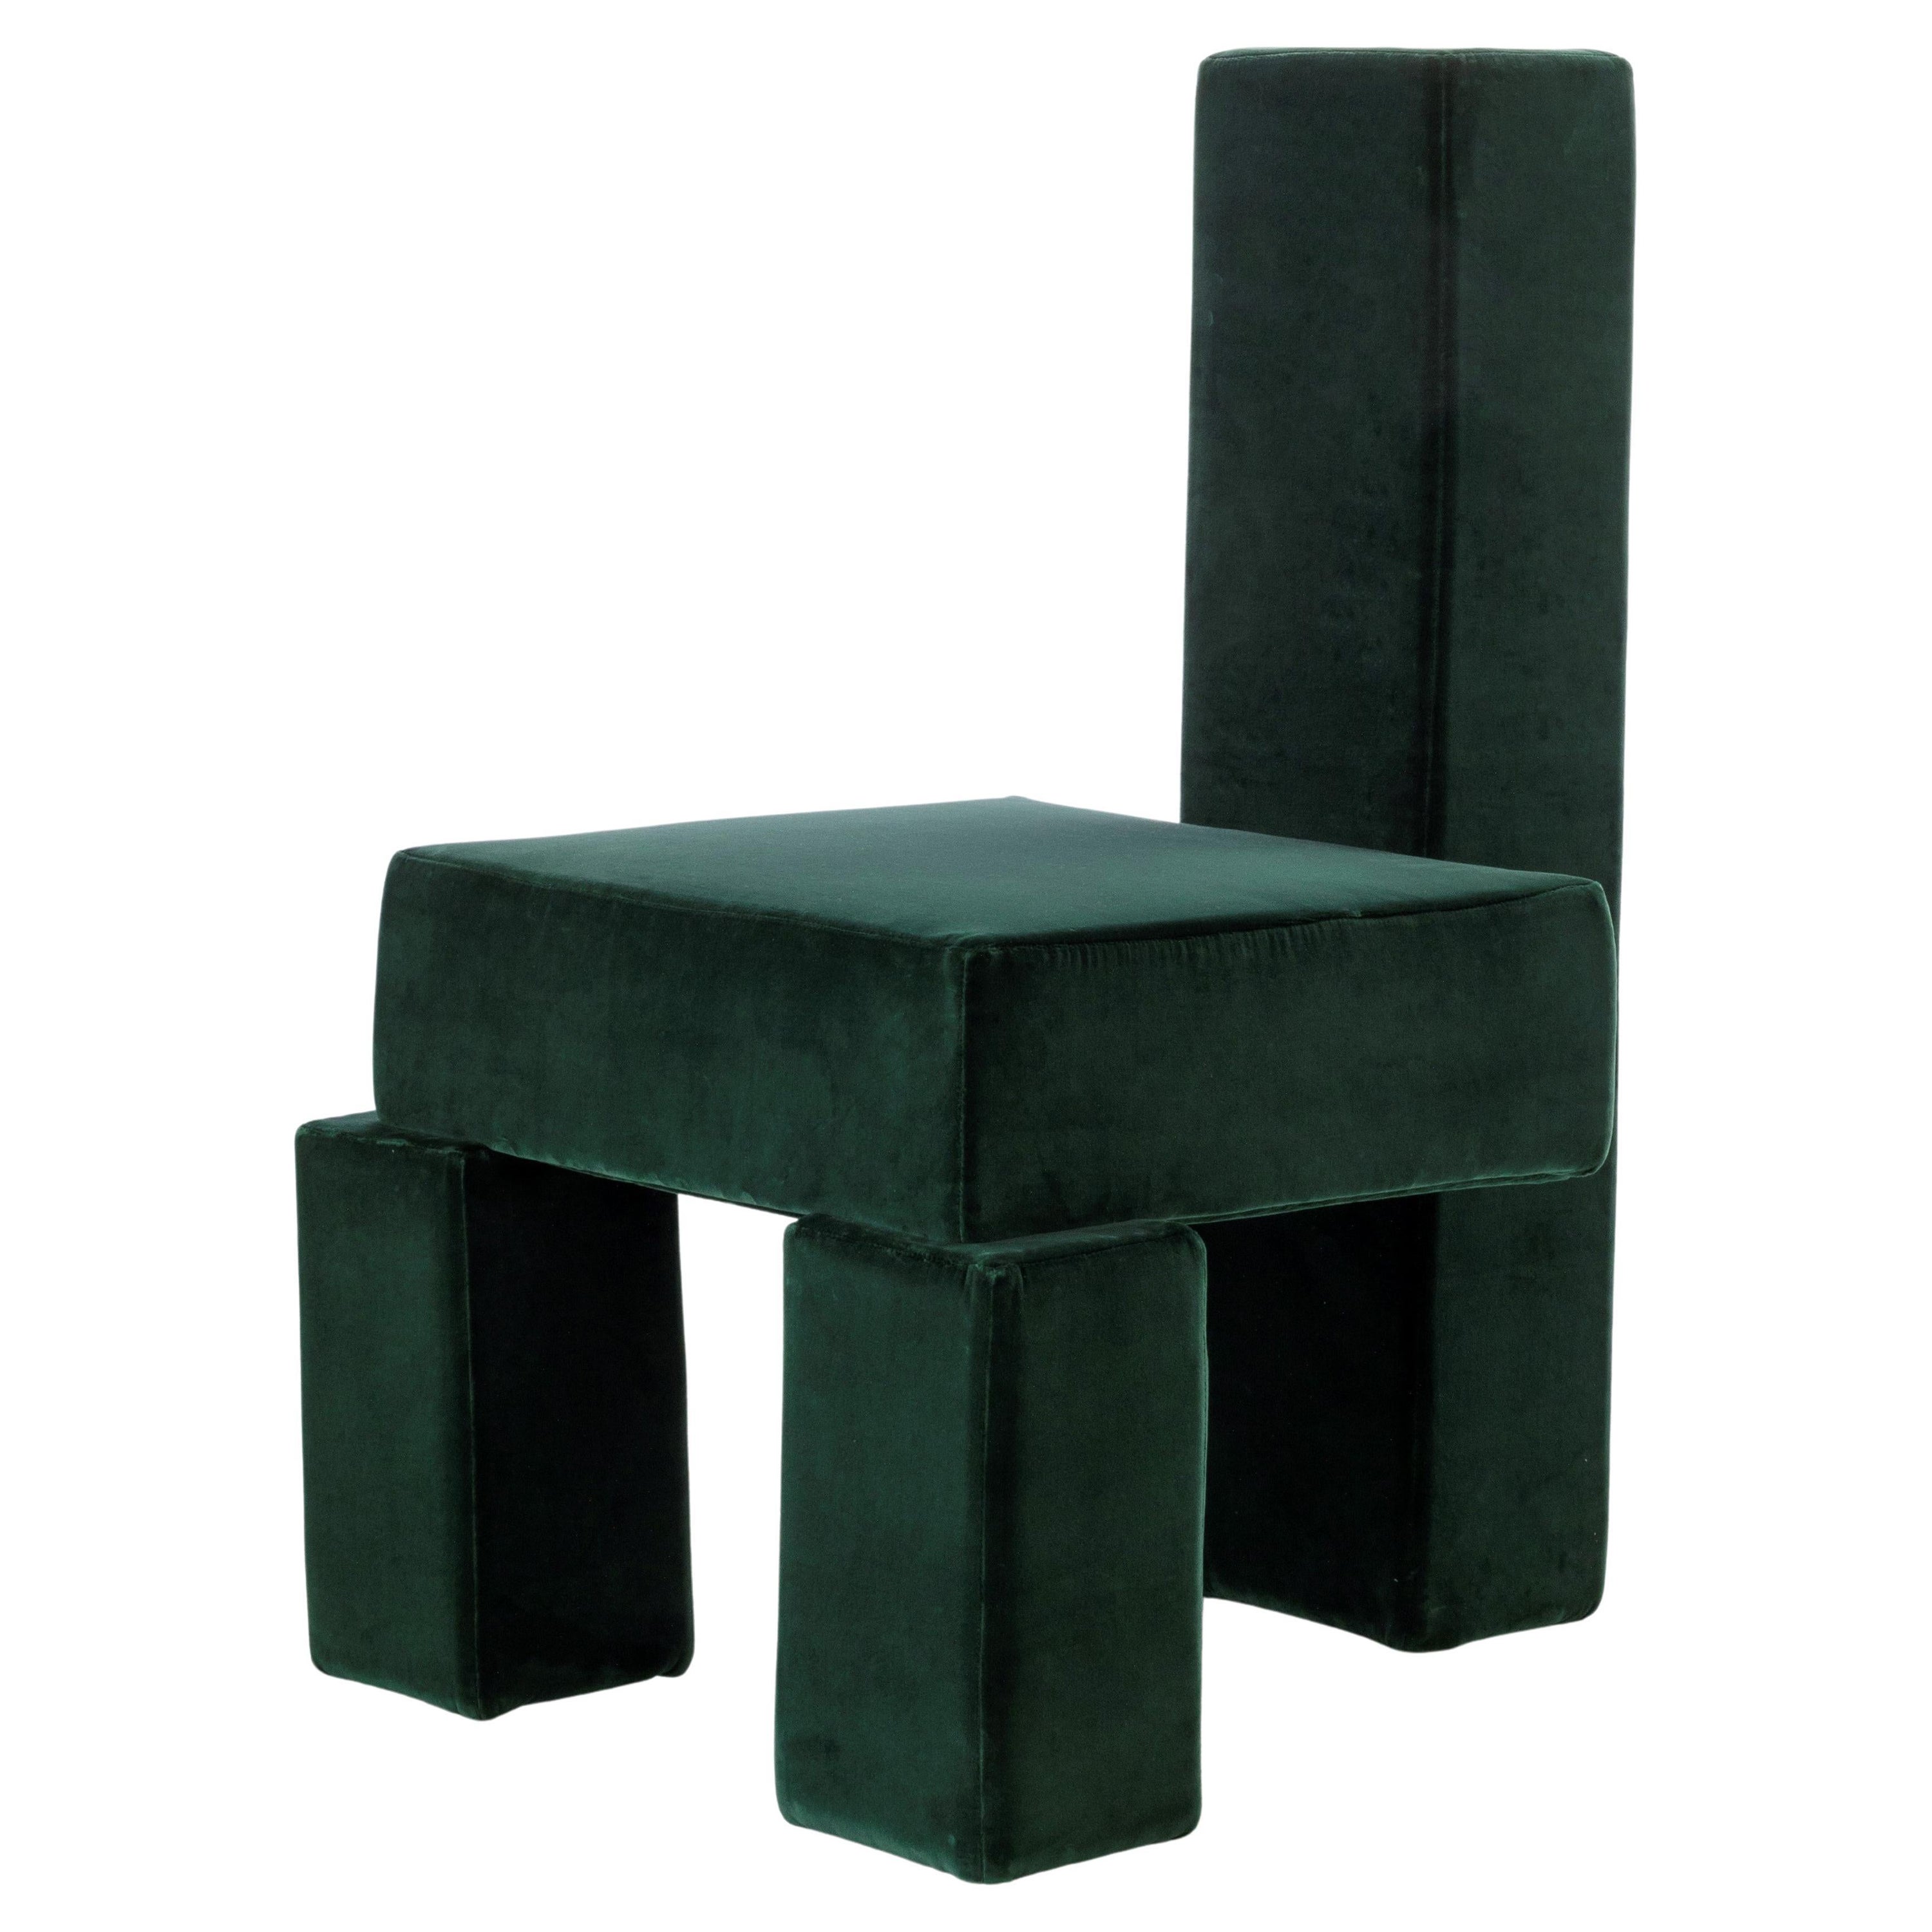 Licitra-Stuhl von Pietro Franceschini